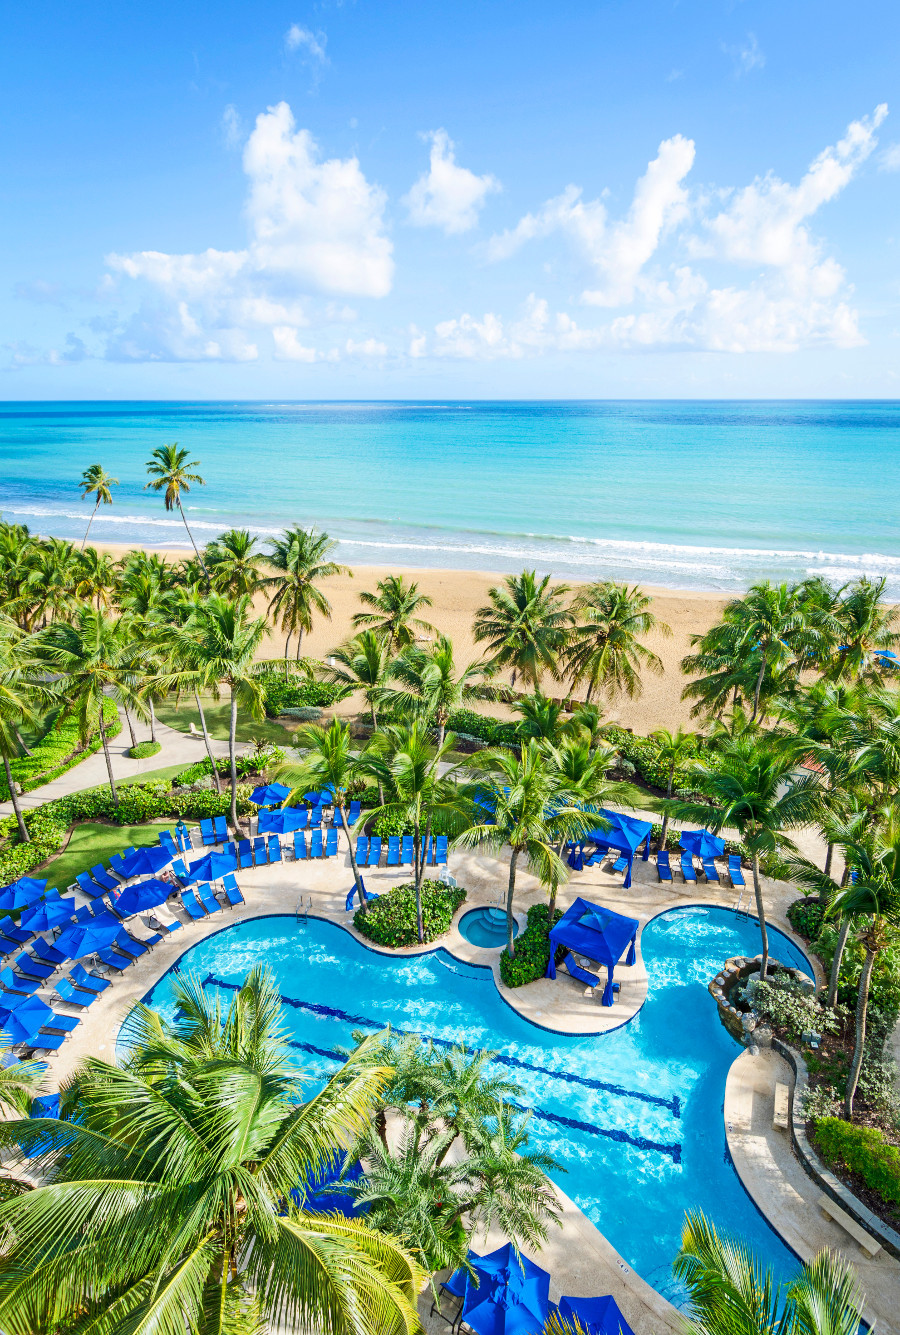 imagen 2 de Wyndham Grand Rio Mar Resort & Spa Puerto Rico.